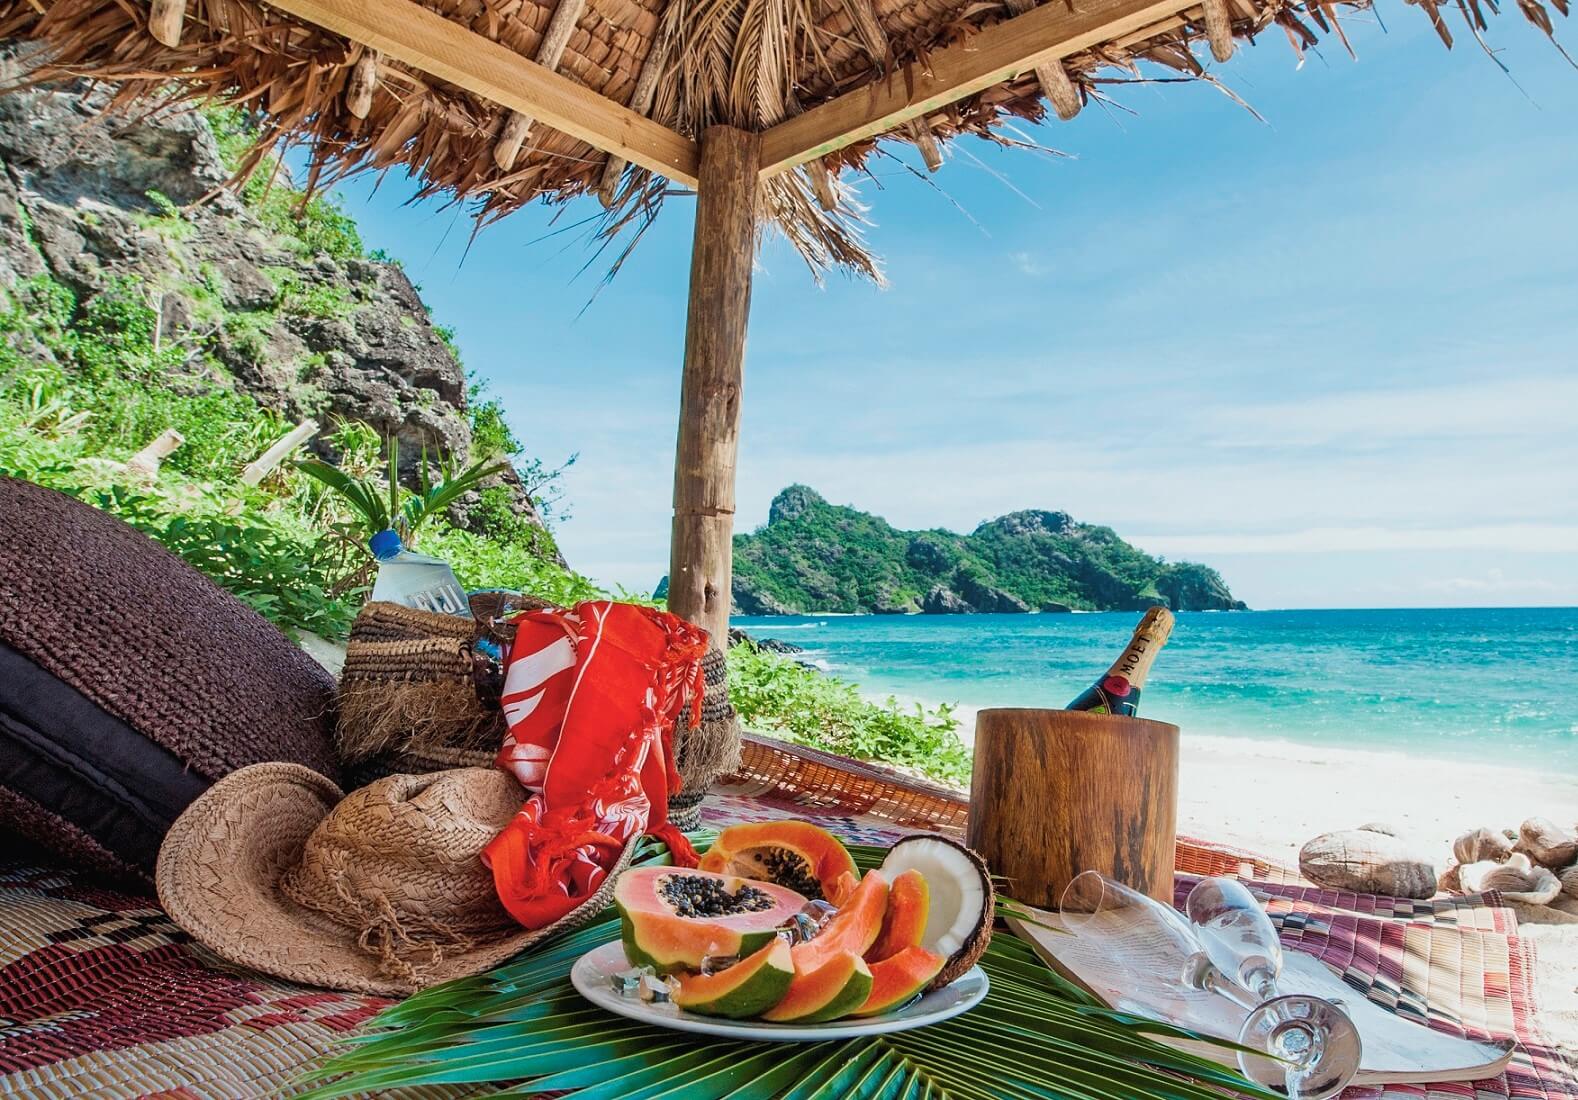 Travel detail. Токорики, Фиджи. Пикник на берегу моря. День рождения на тропическом острове. Пикник красивые фото.